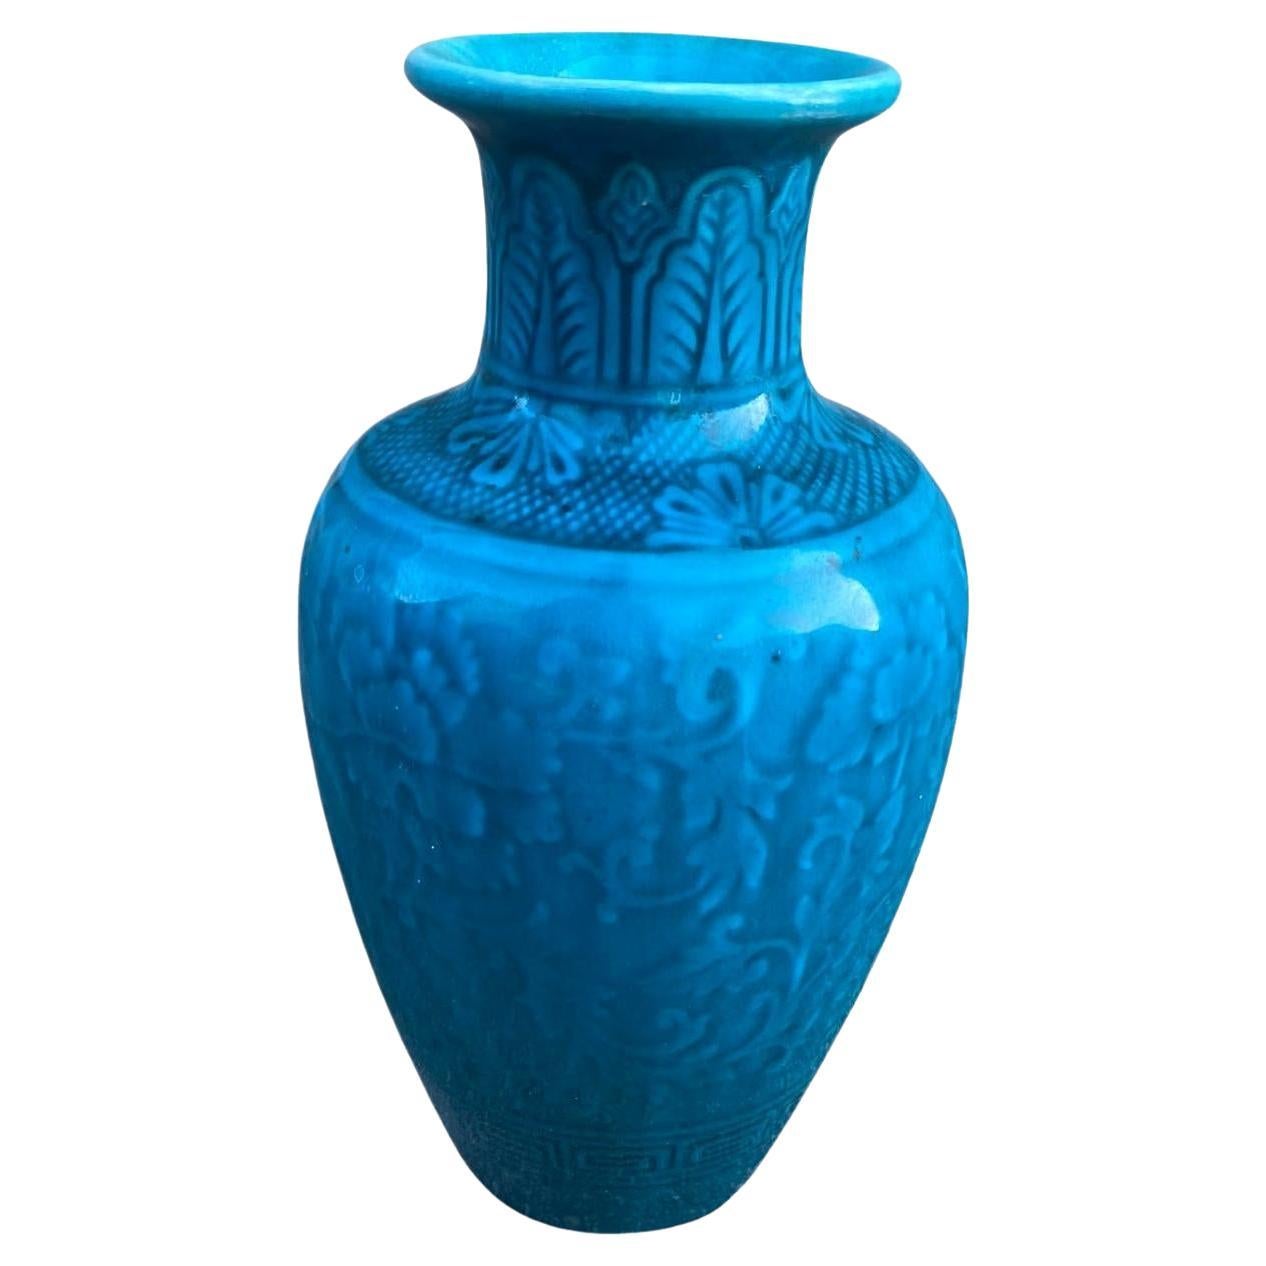 Théodore Deck, Ceramic Vase, Signed, circa 1870